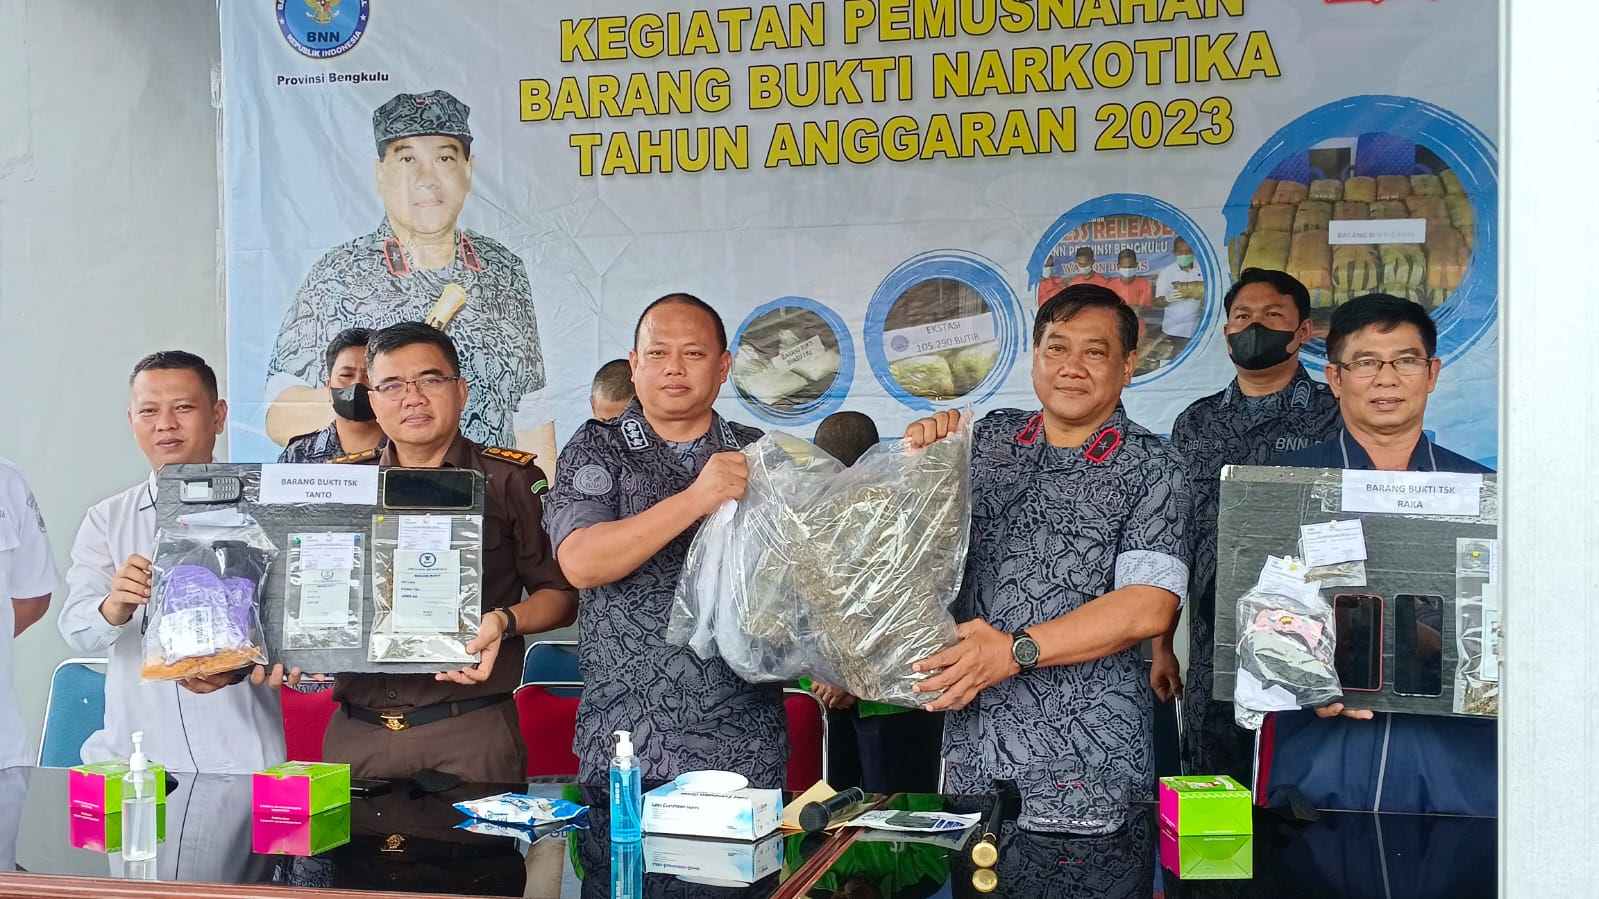 BNN Provinsi Bengkulu Musnahkan 5 Kg Ganja Kering, 2 Pelaku Ditangkap